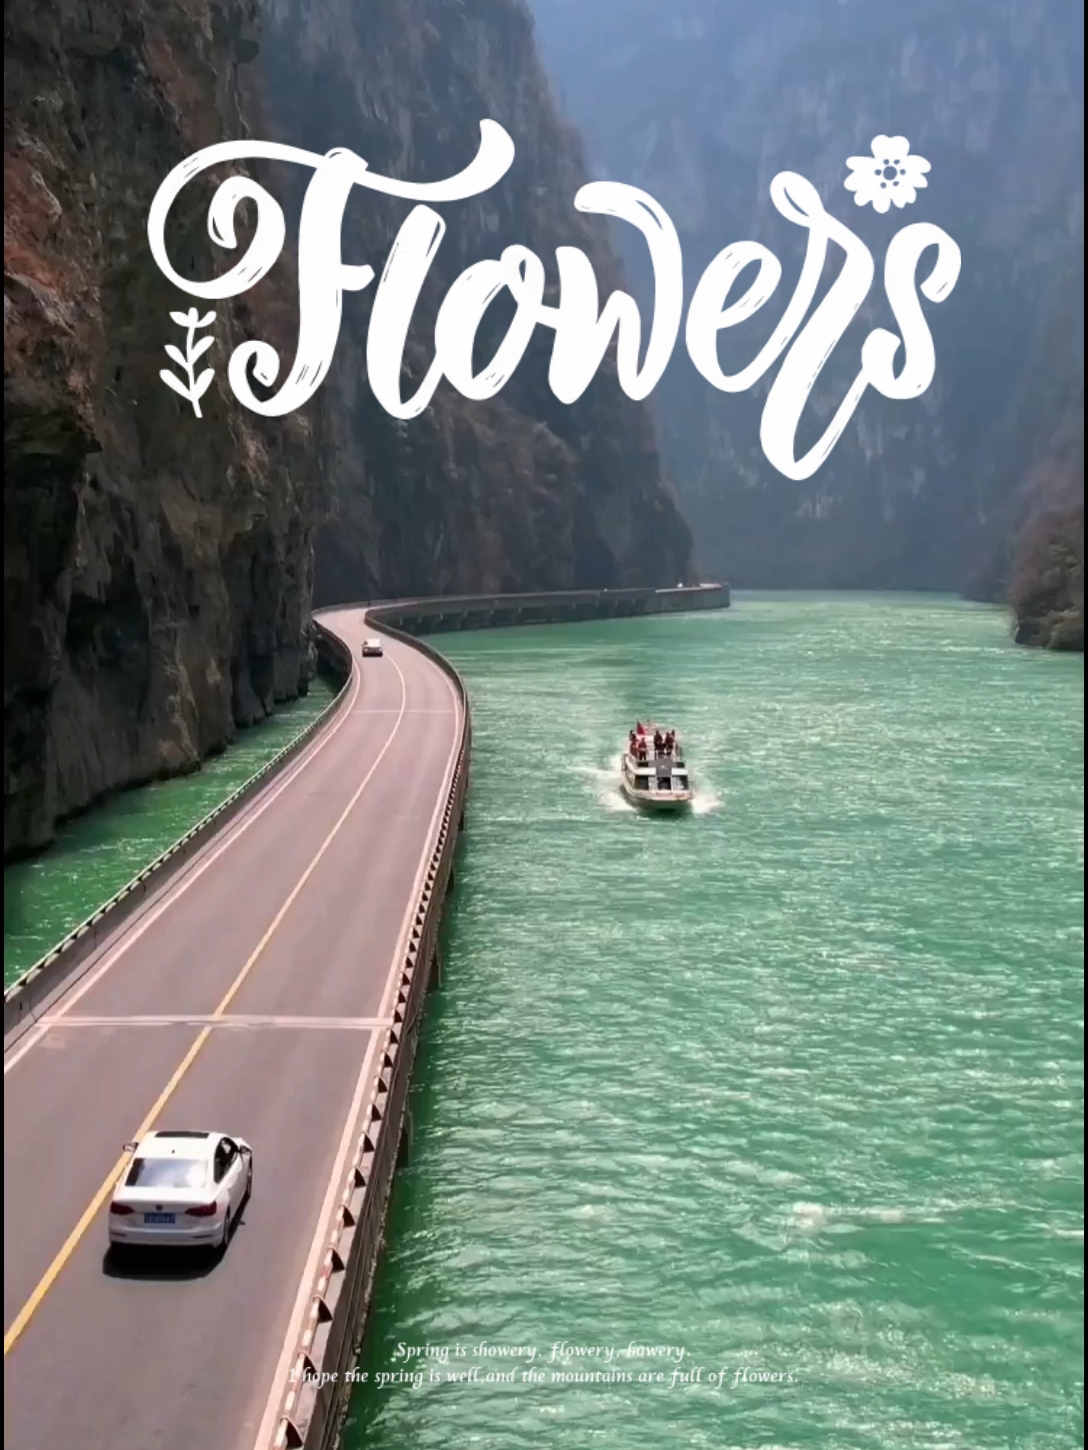 国内十大最美峡谷之一的金口大峡谷，被誉为“地质天书，旷世幽谷”。#旅行推荐官 #金口河大峡谷